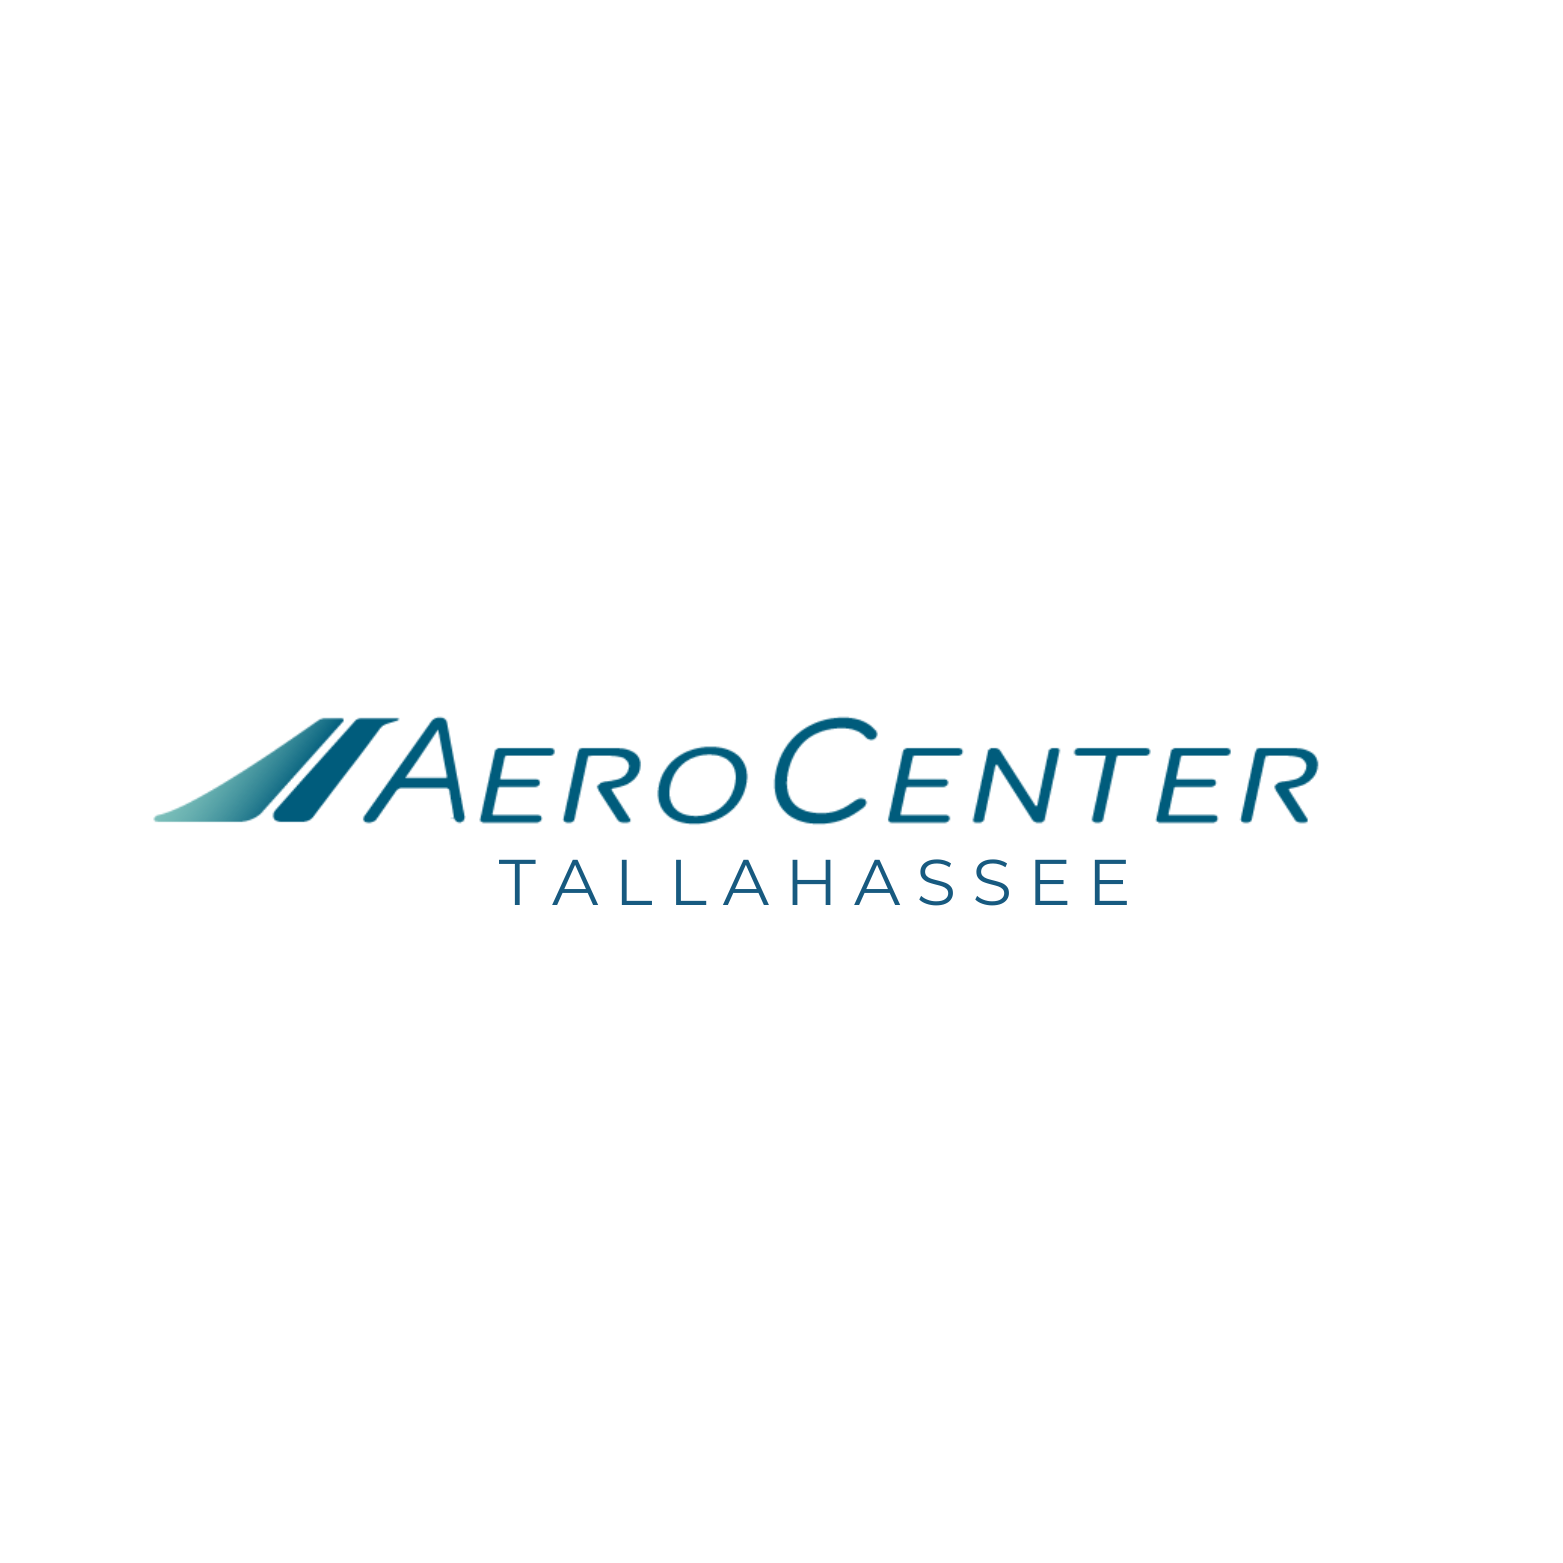 Aero Center Tallahassee